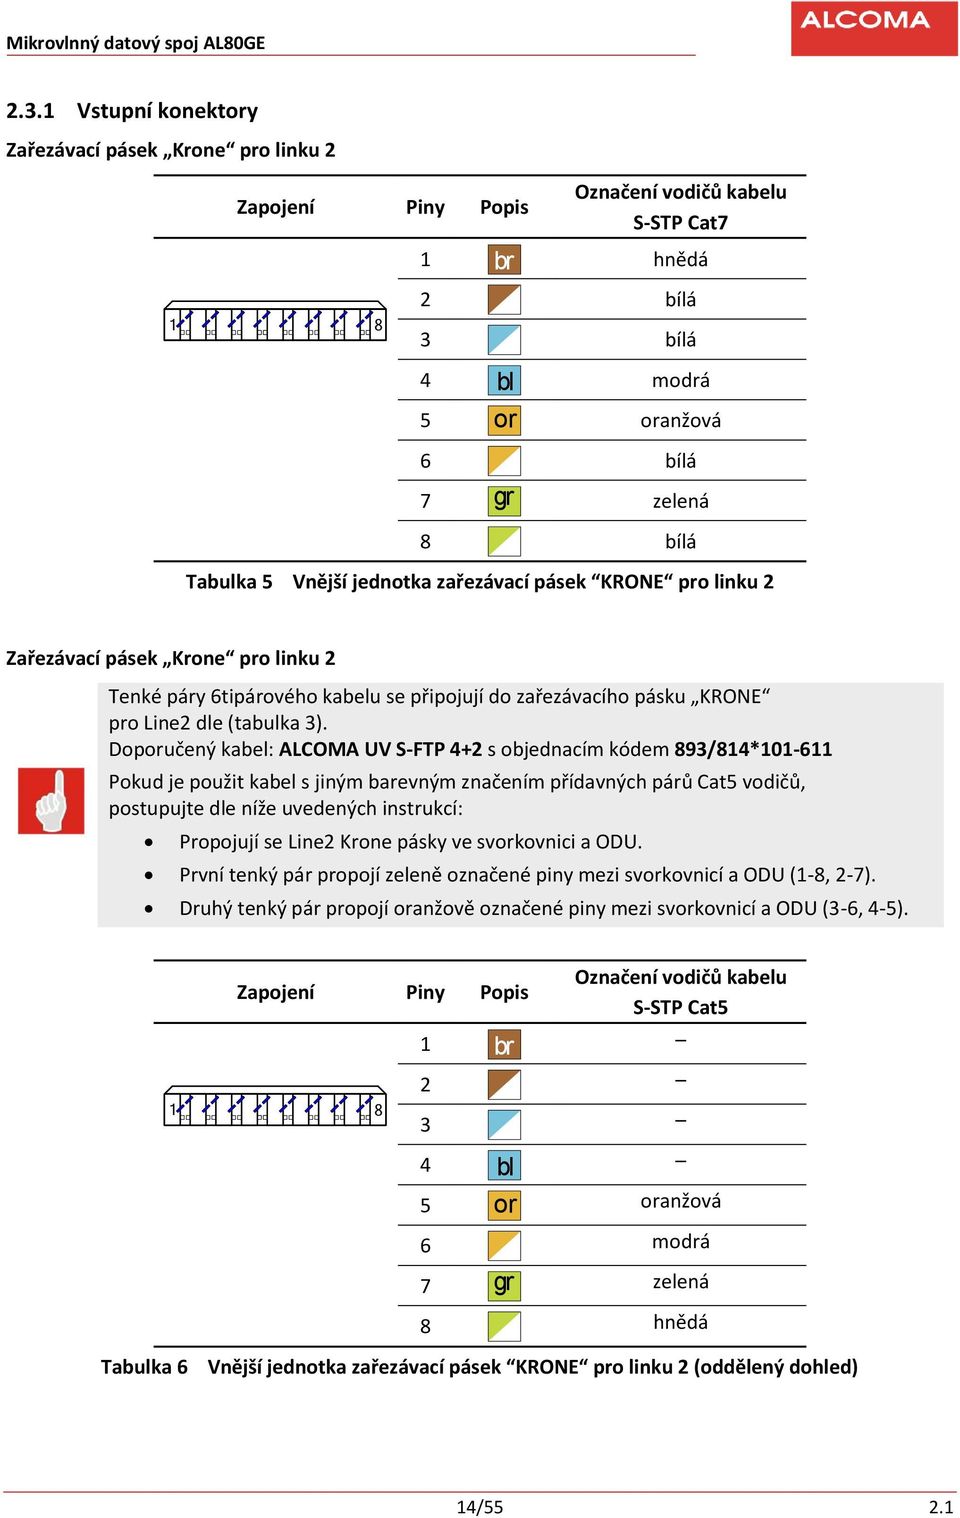 Doporučený kabel: ALCOMA UV S-FTP 4+2 s objednacím kódem 893/814*101-611 Pokud je použit kabel s jiným barevným značením přídavných párů Cat5 vodičů, postupujte dle níže uvedených instrukcí: